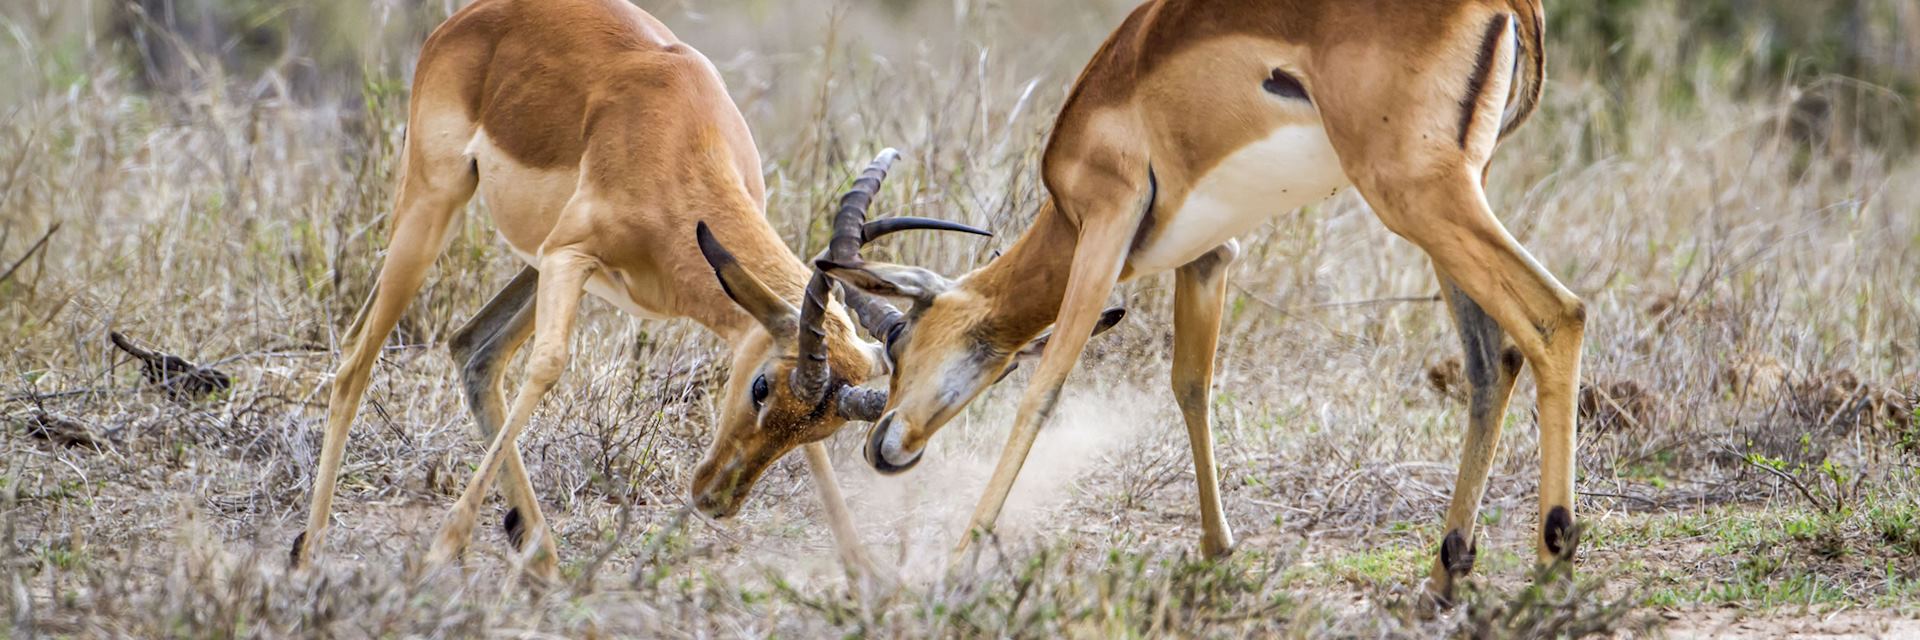 Impala in the Niassa Reserve, Mozambique